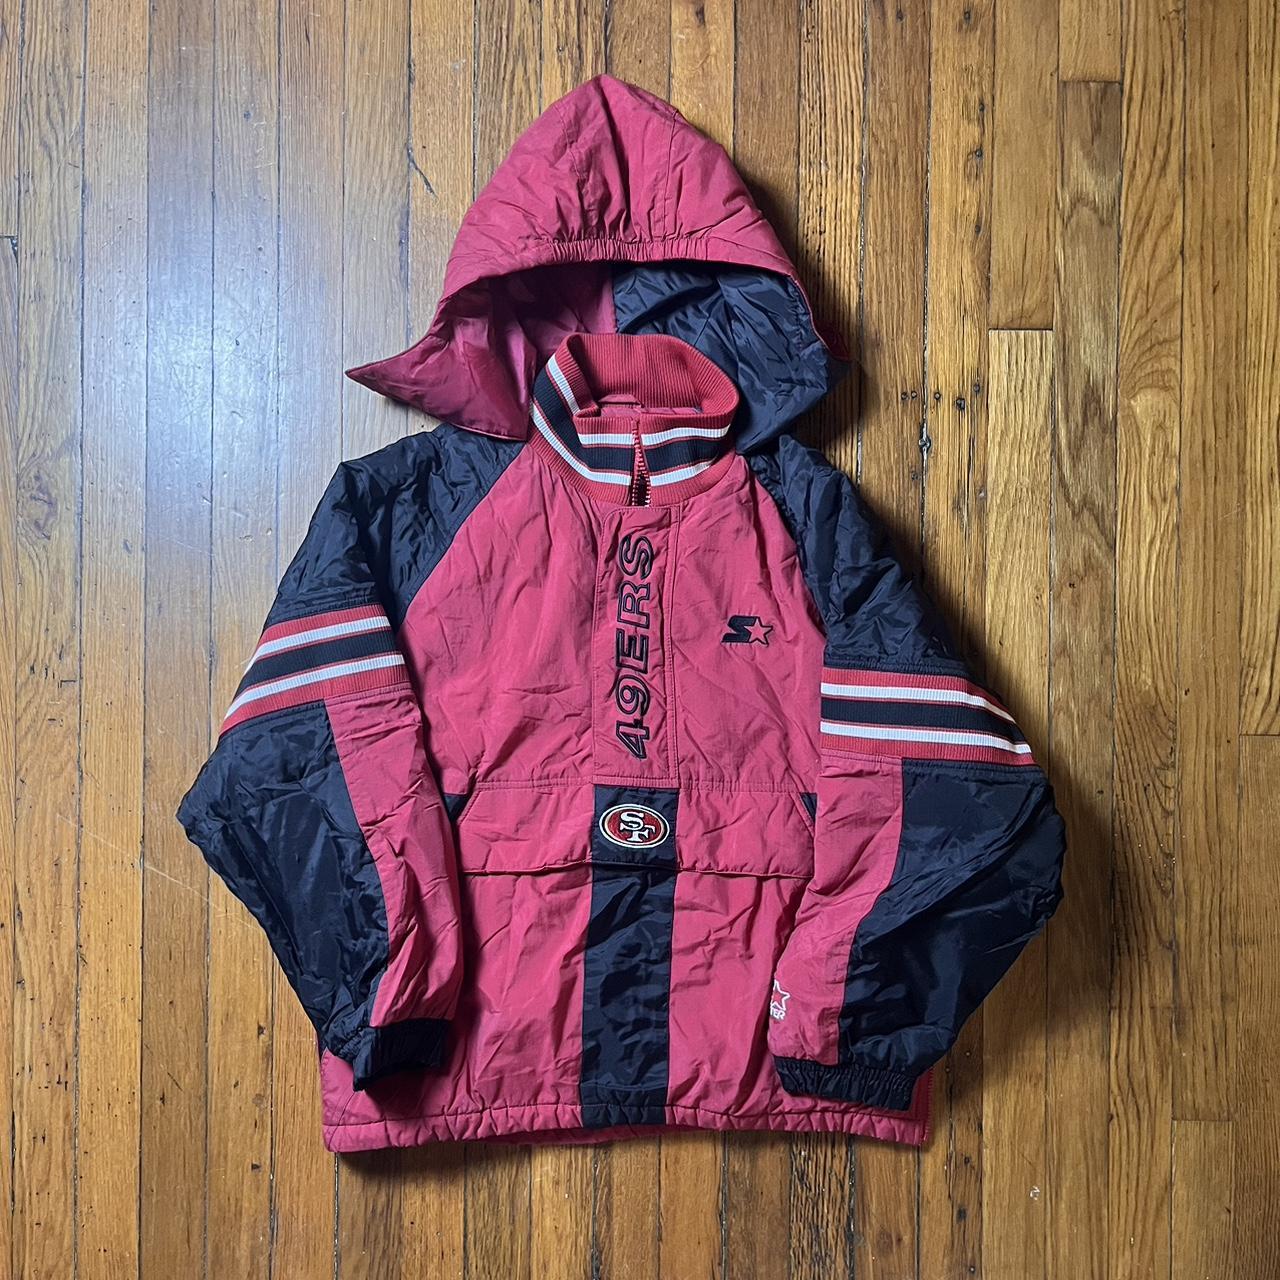 Vintage Starter - San Francisco '49ers' Hooded Jacket 1990's Large